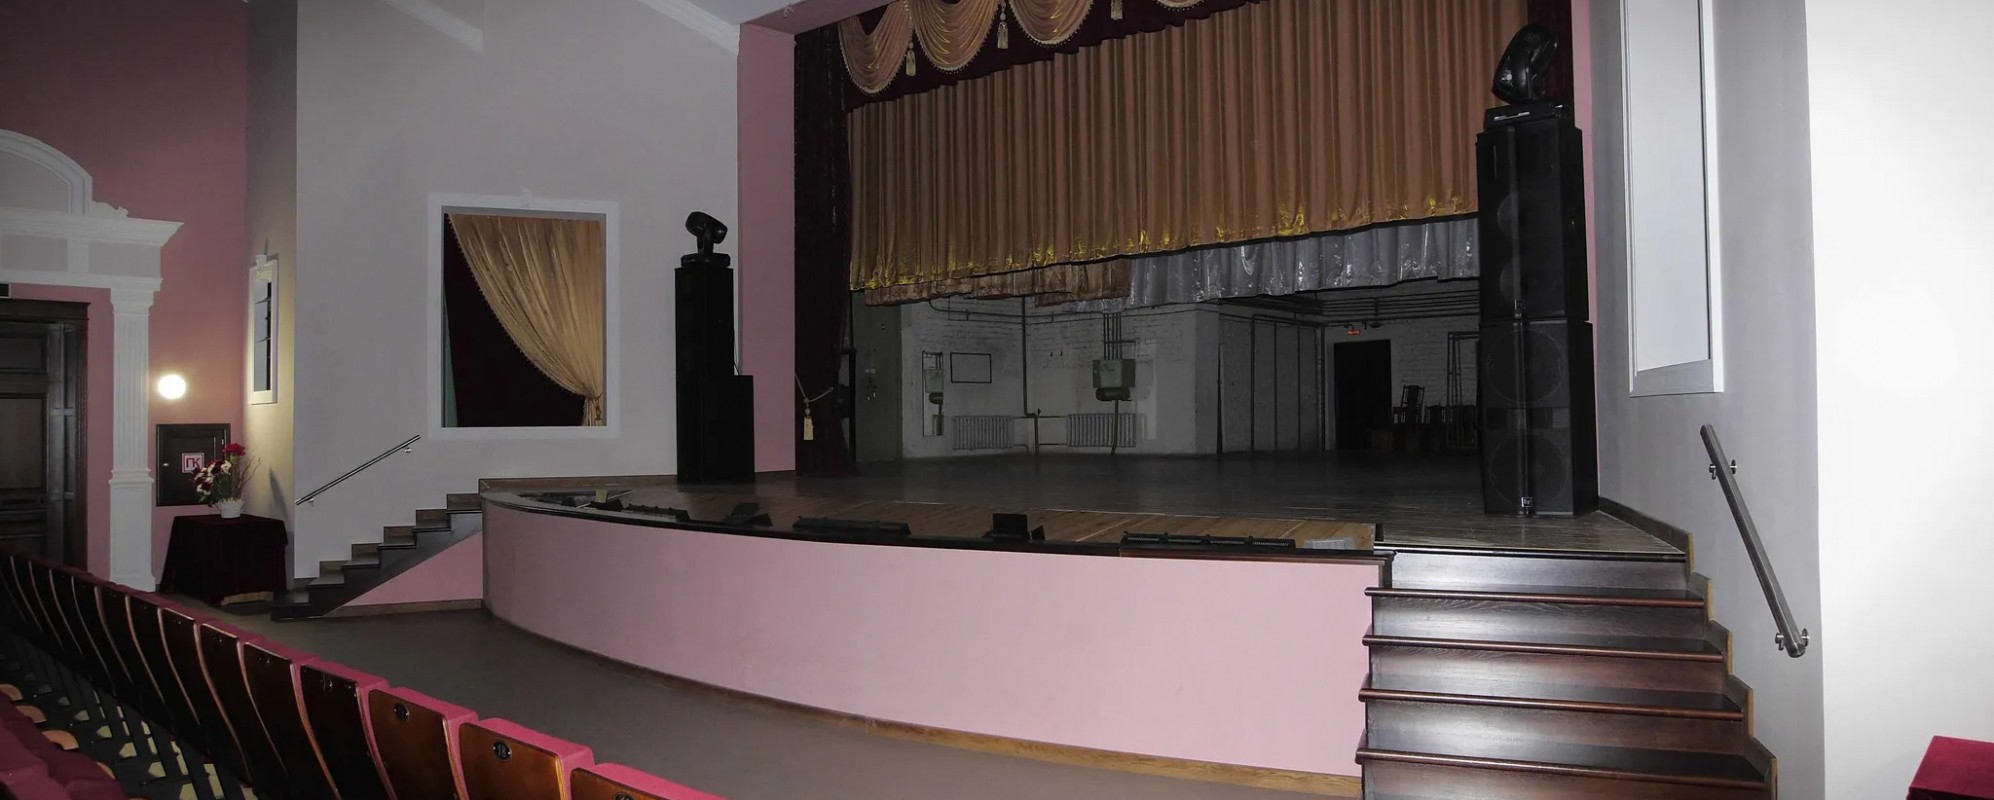 Фотографии концертного зала Культурно-досуговый центр Концертный зал